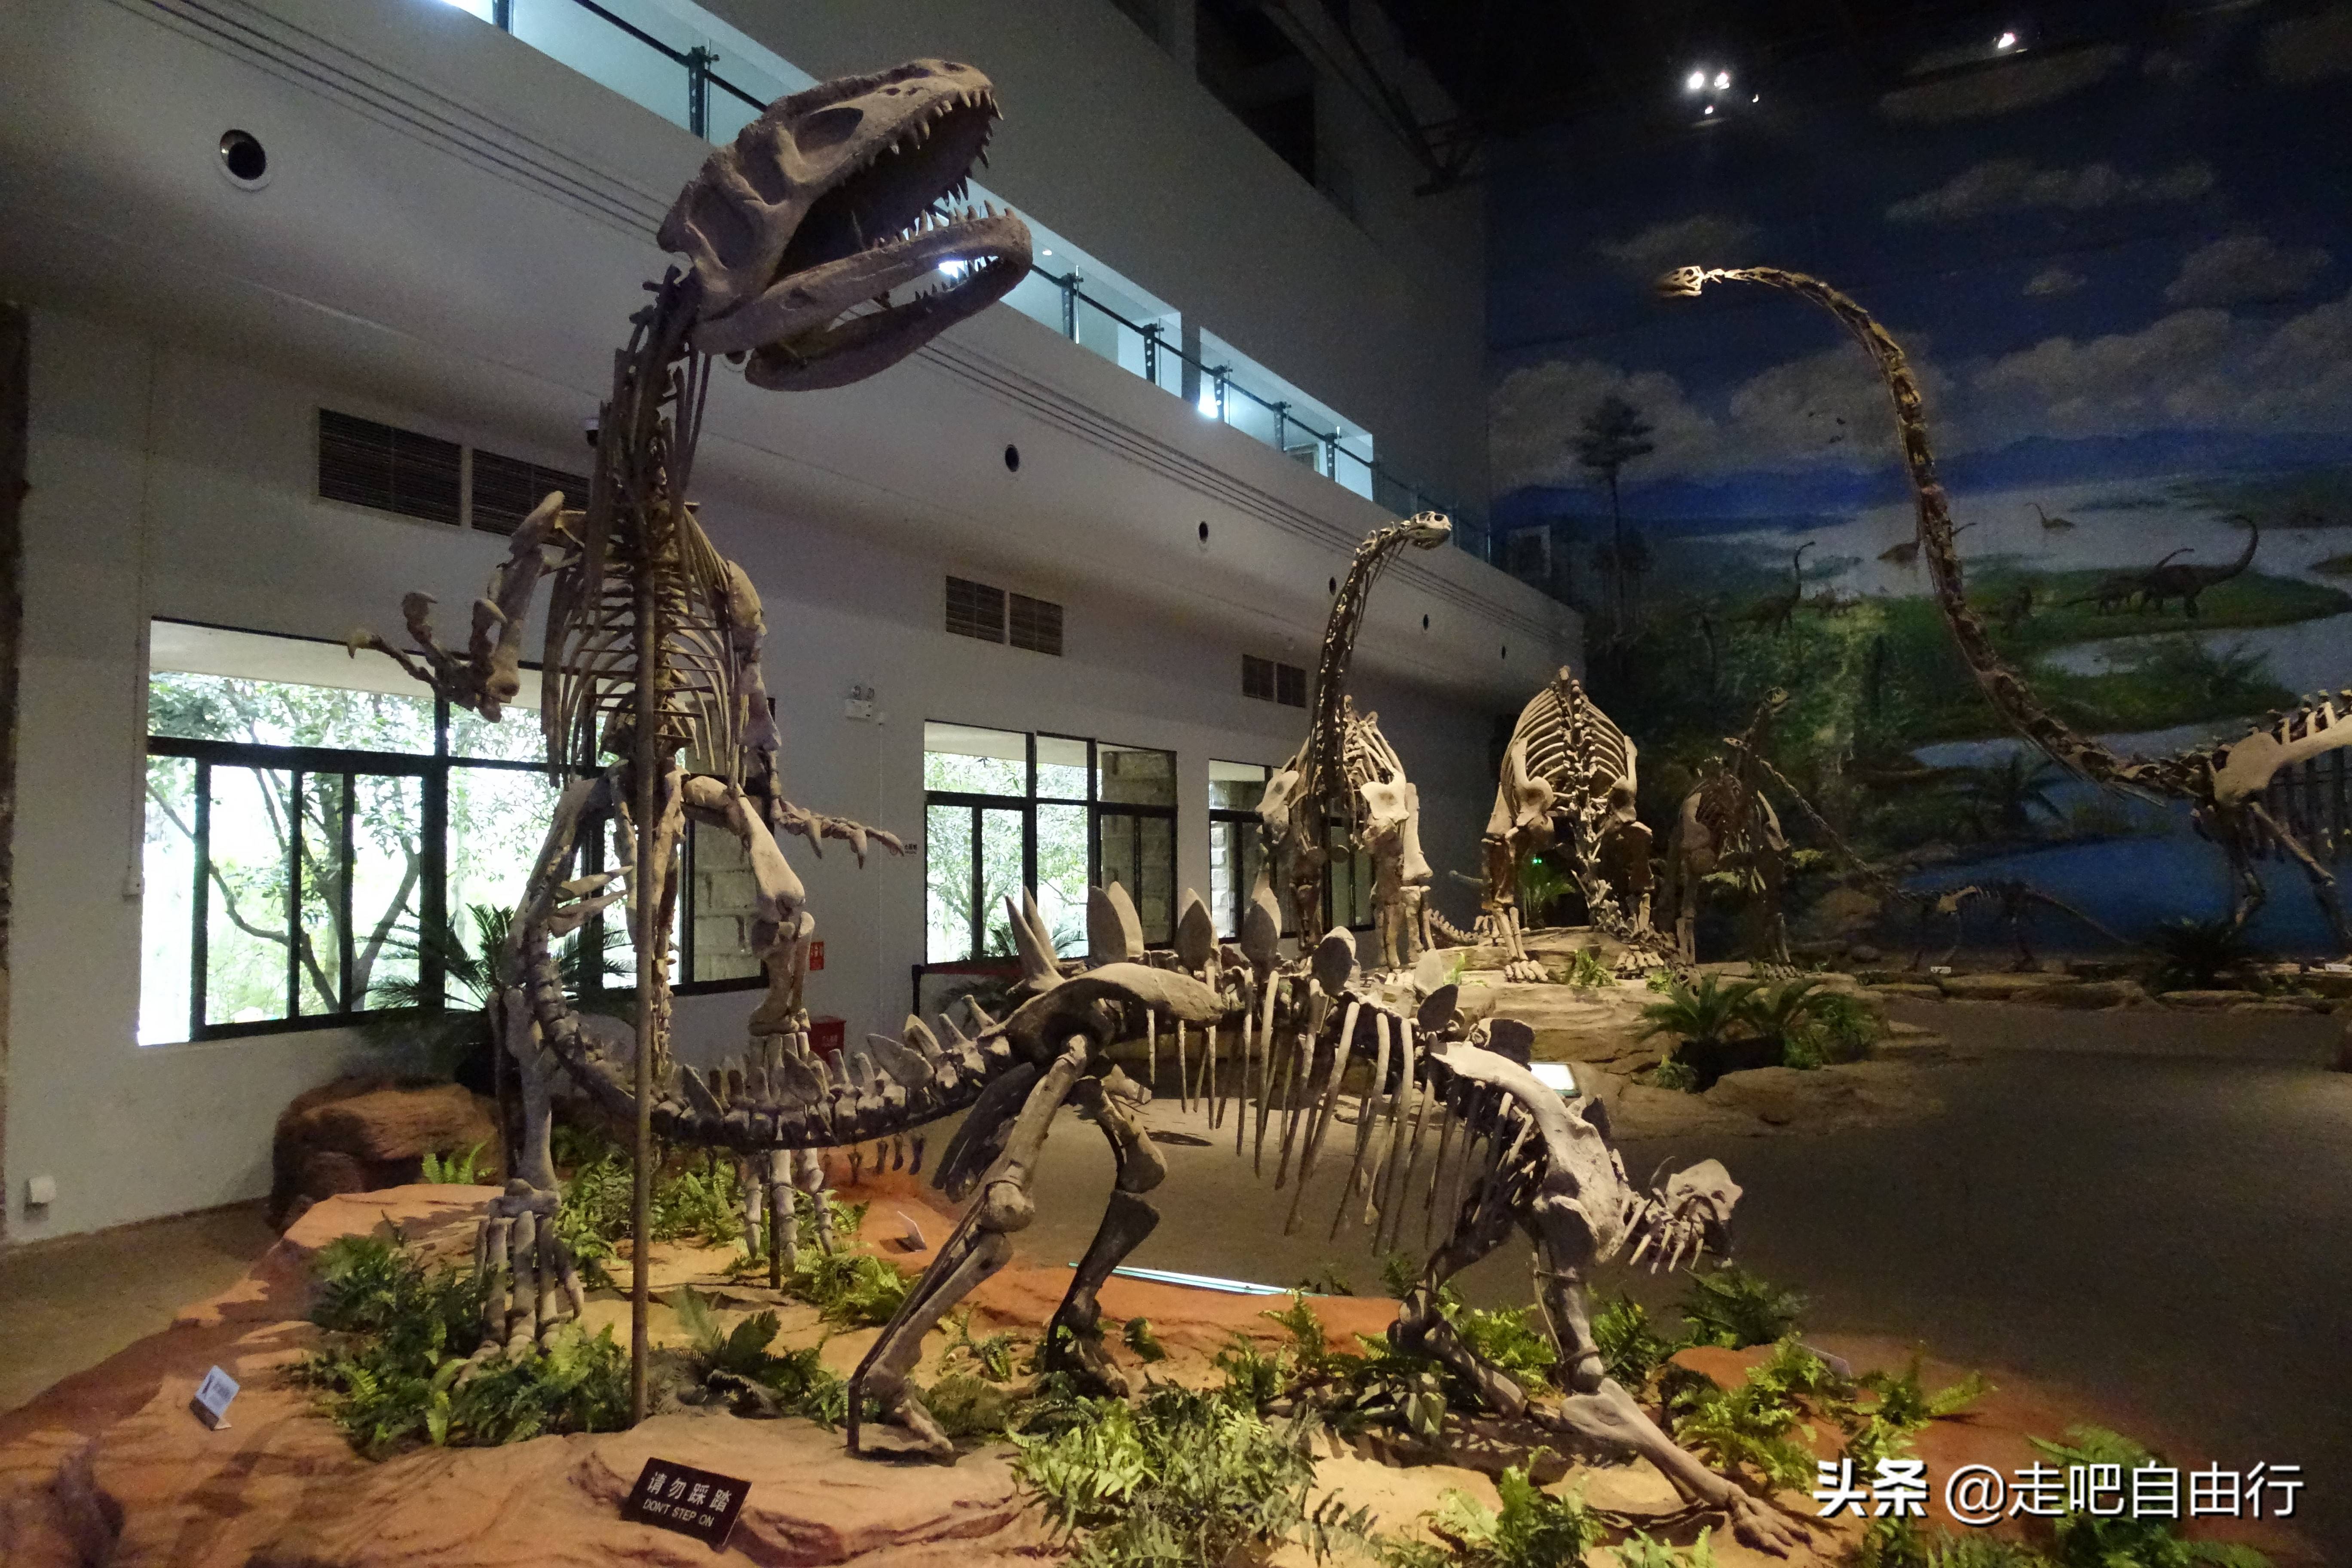 原创走进恐龙遗址群窟号称川南四绝之一的自贡恐龙化石博物馆